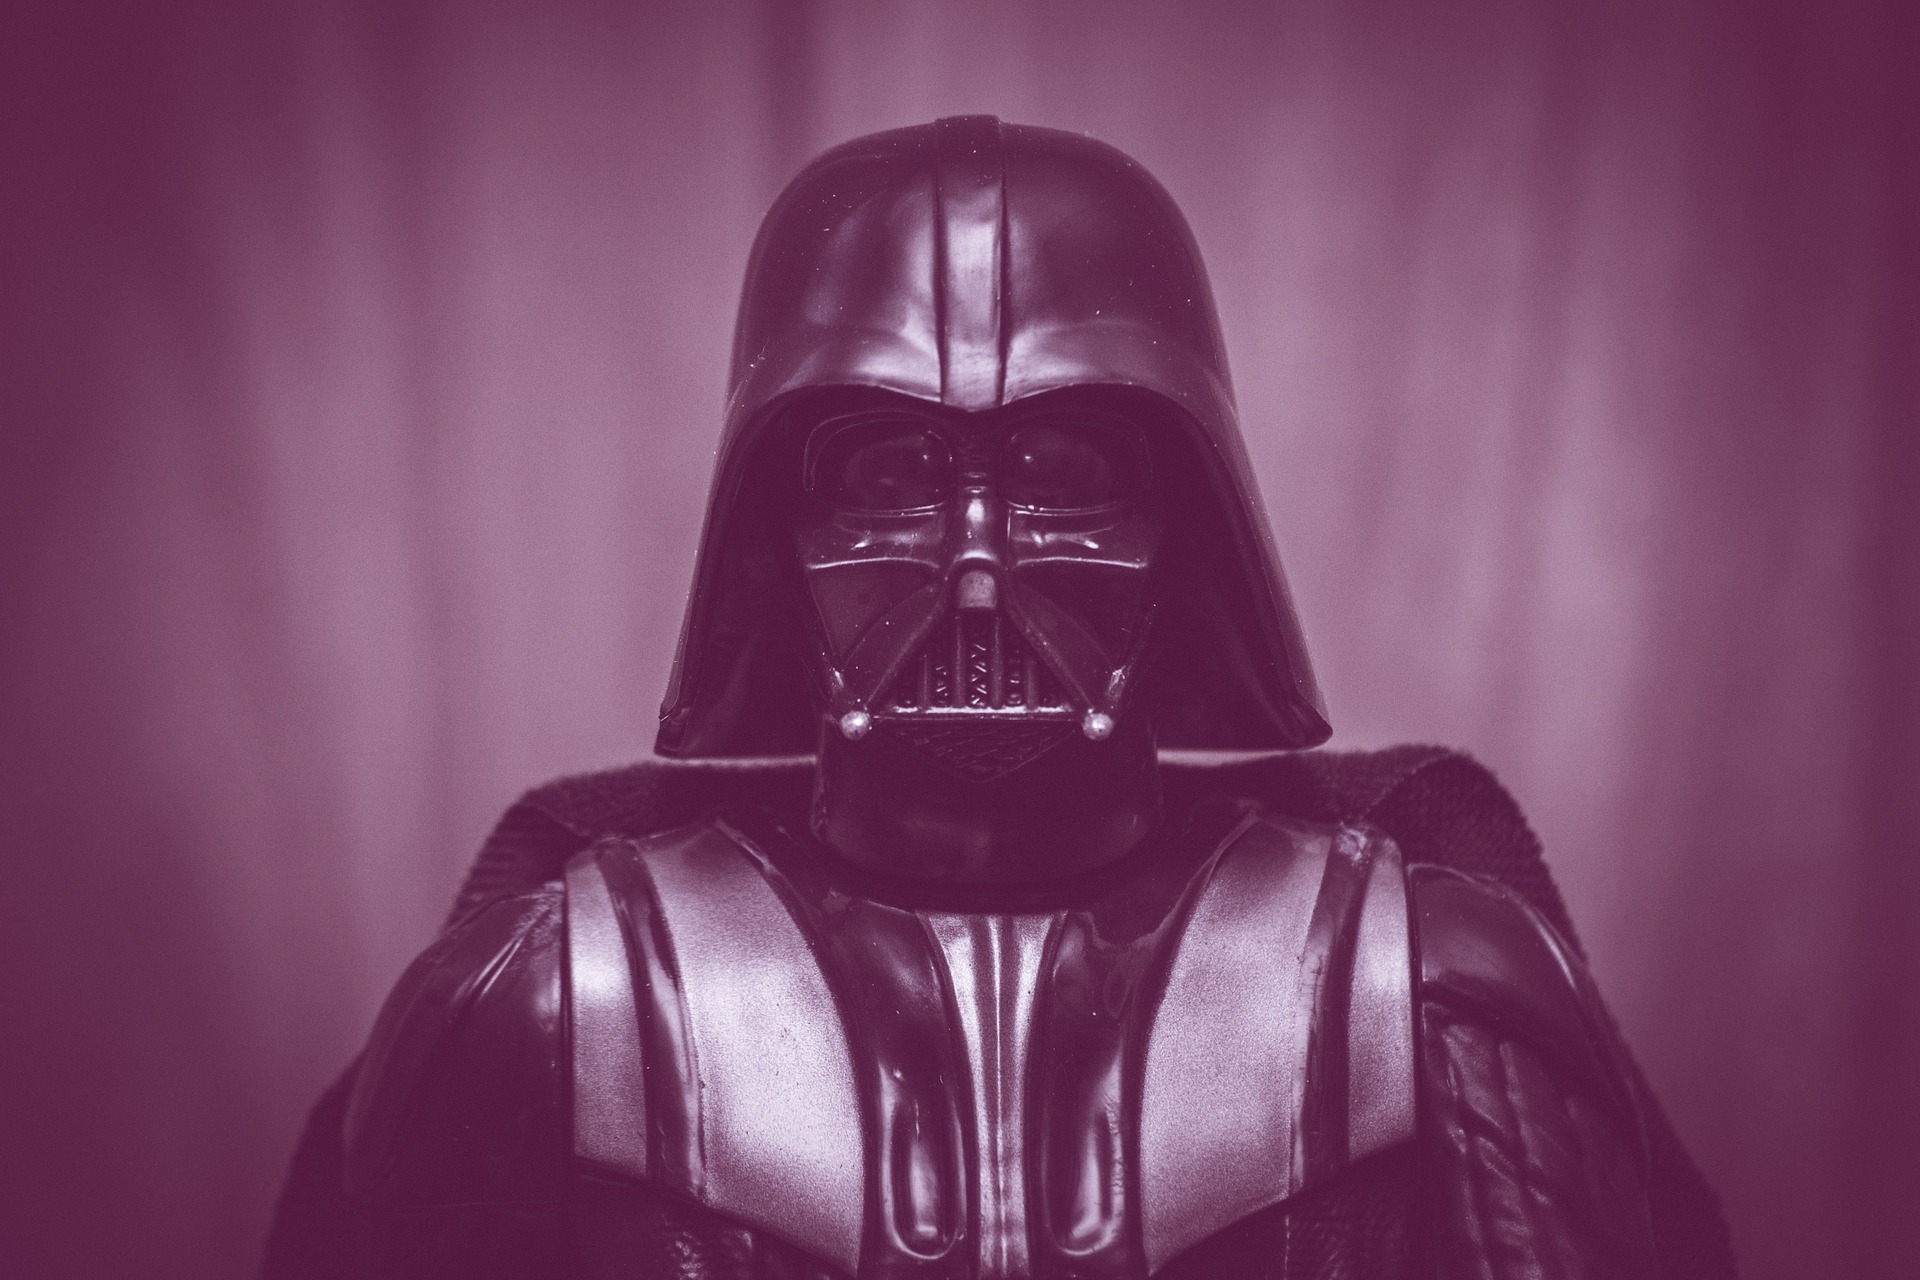 The Dark Side of Leadership